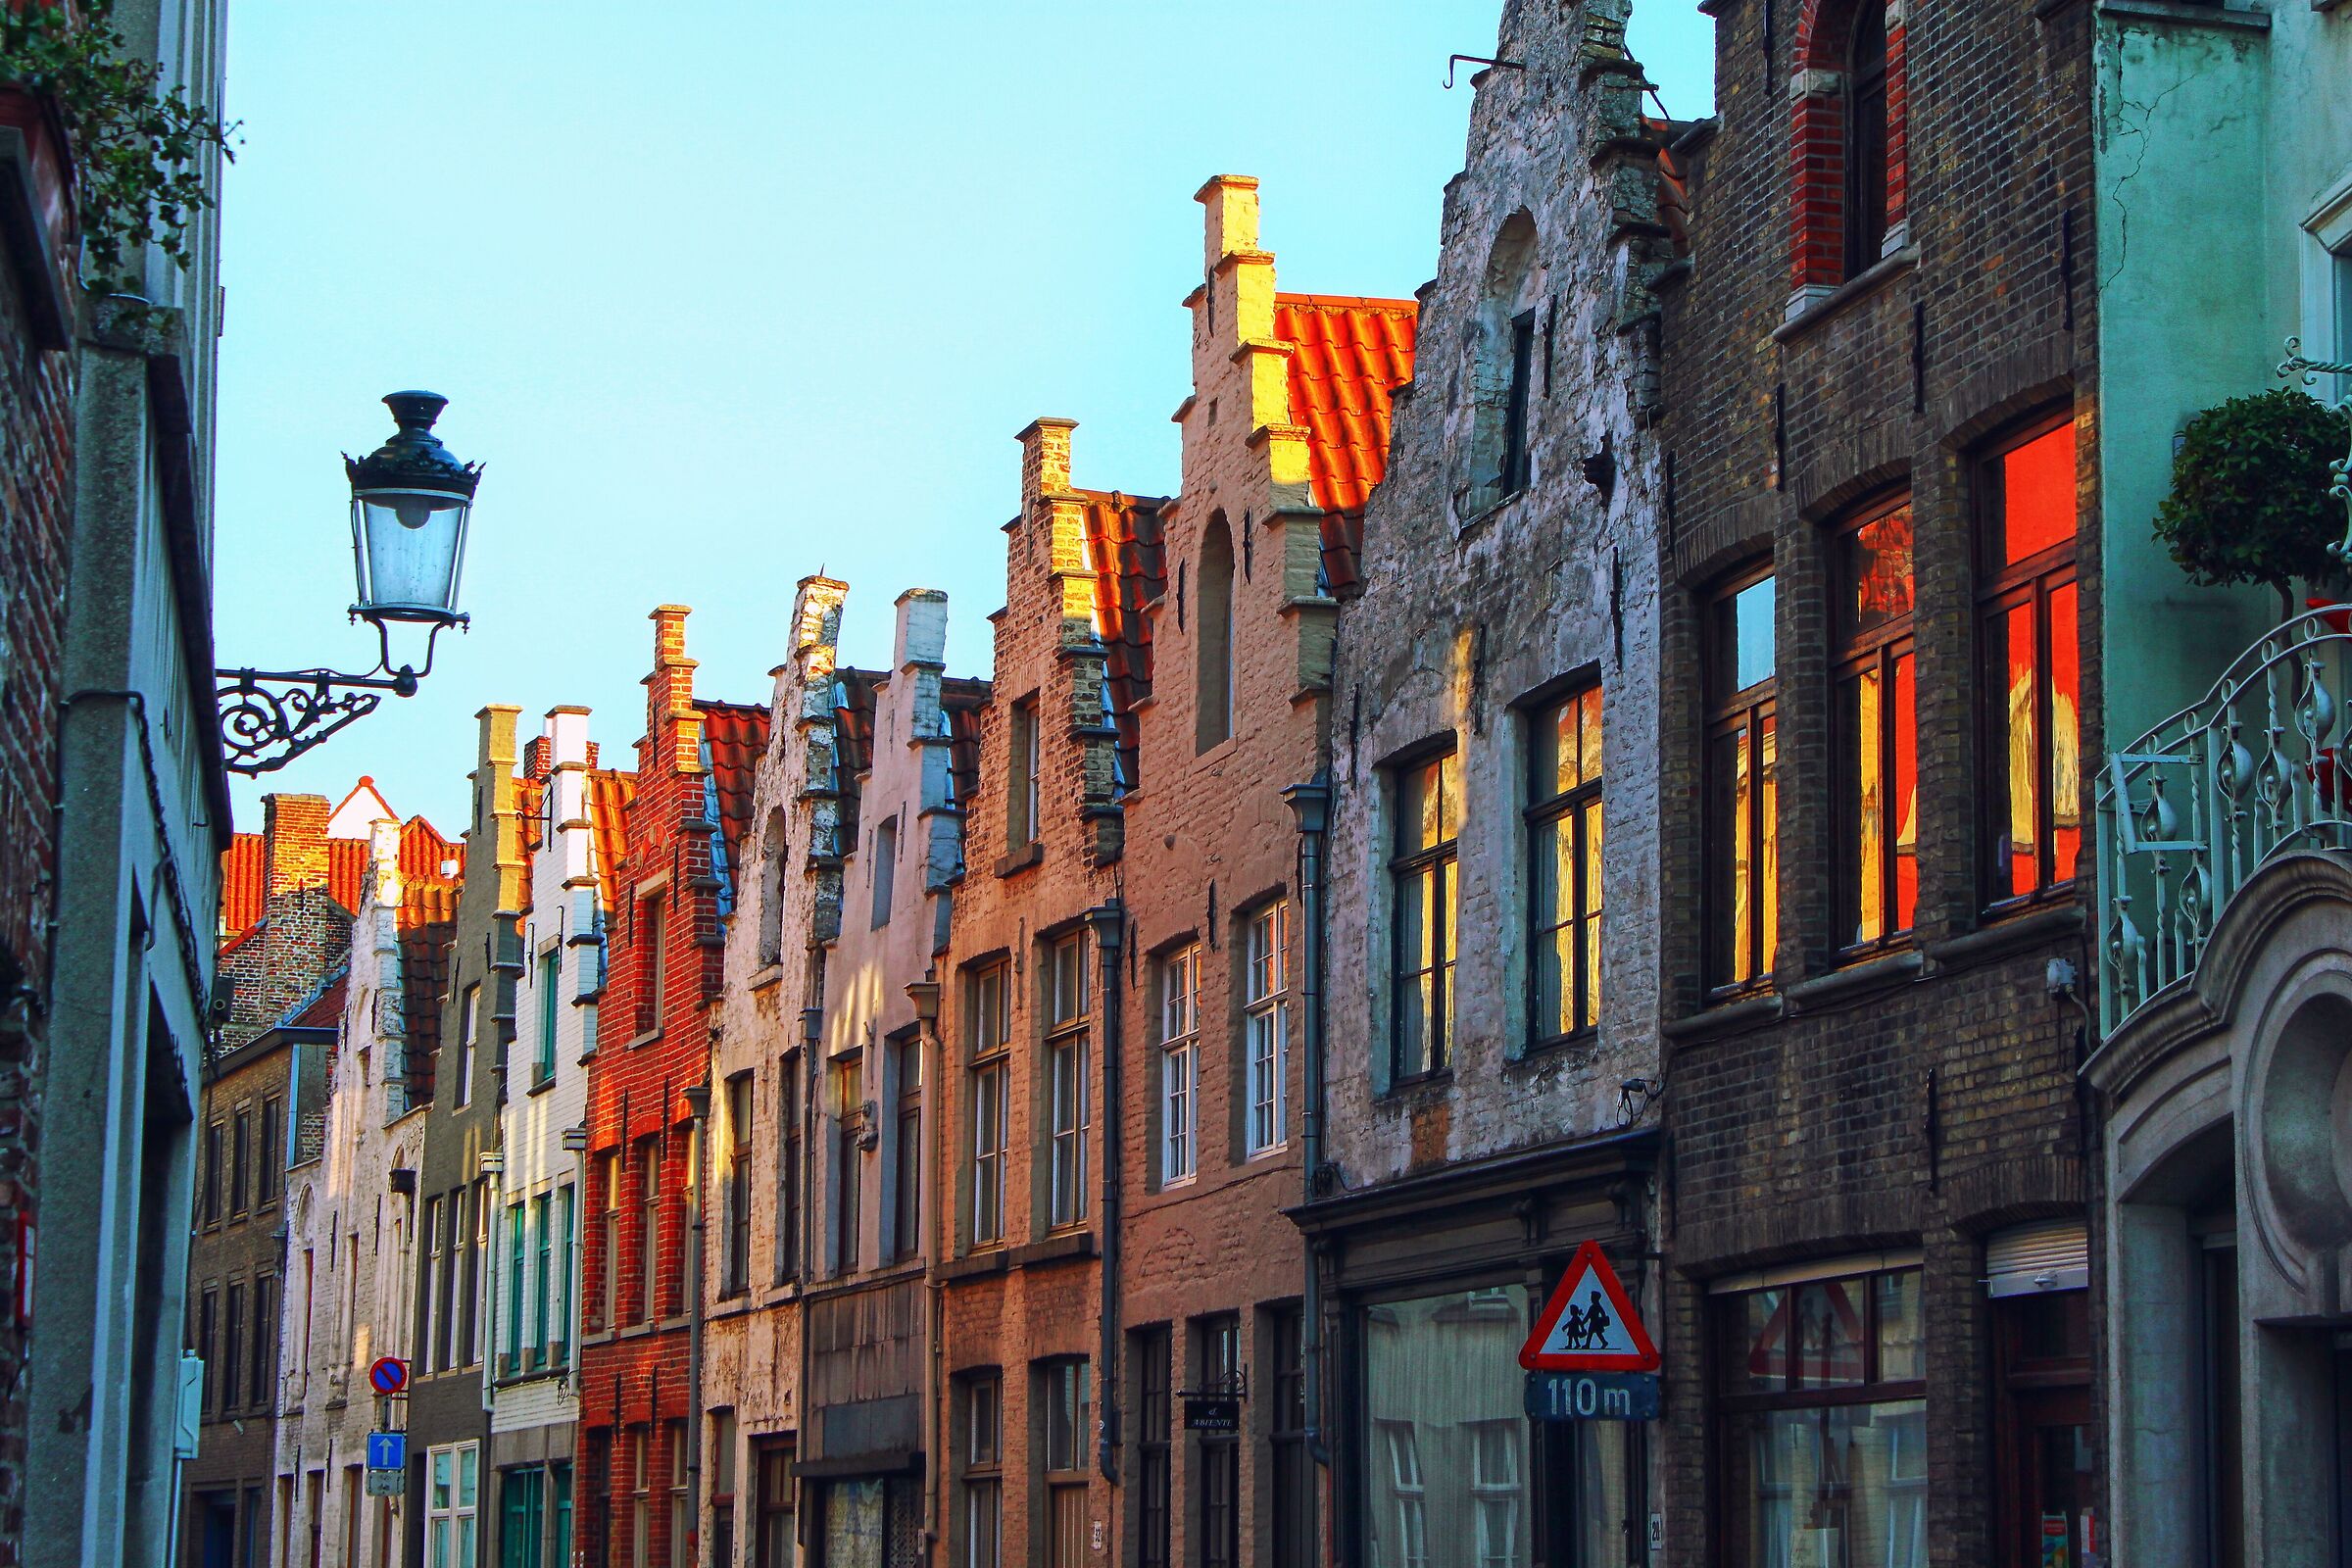 A street in Bruges...